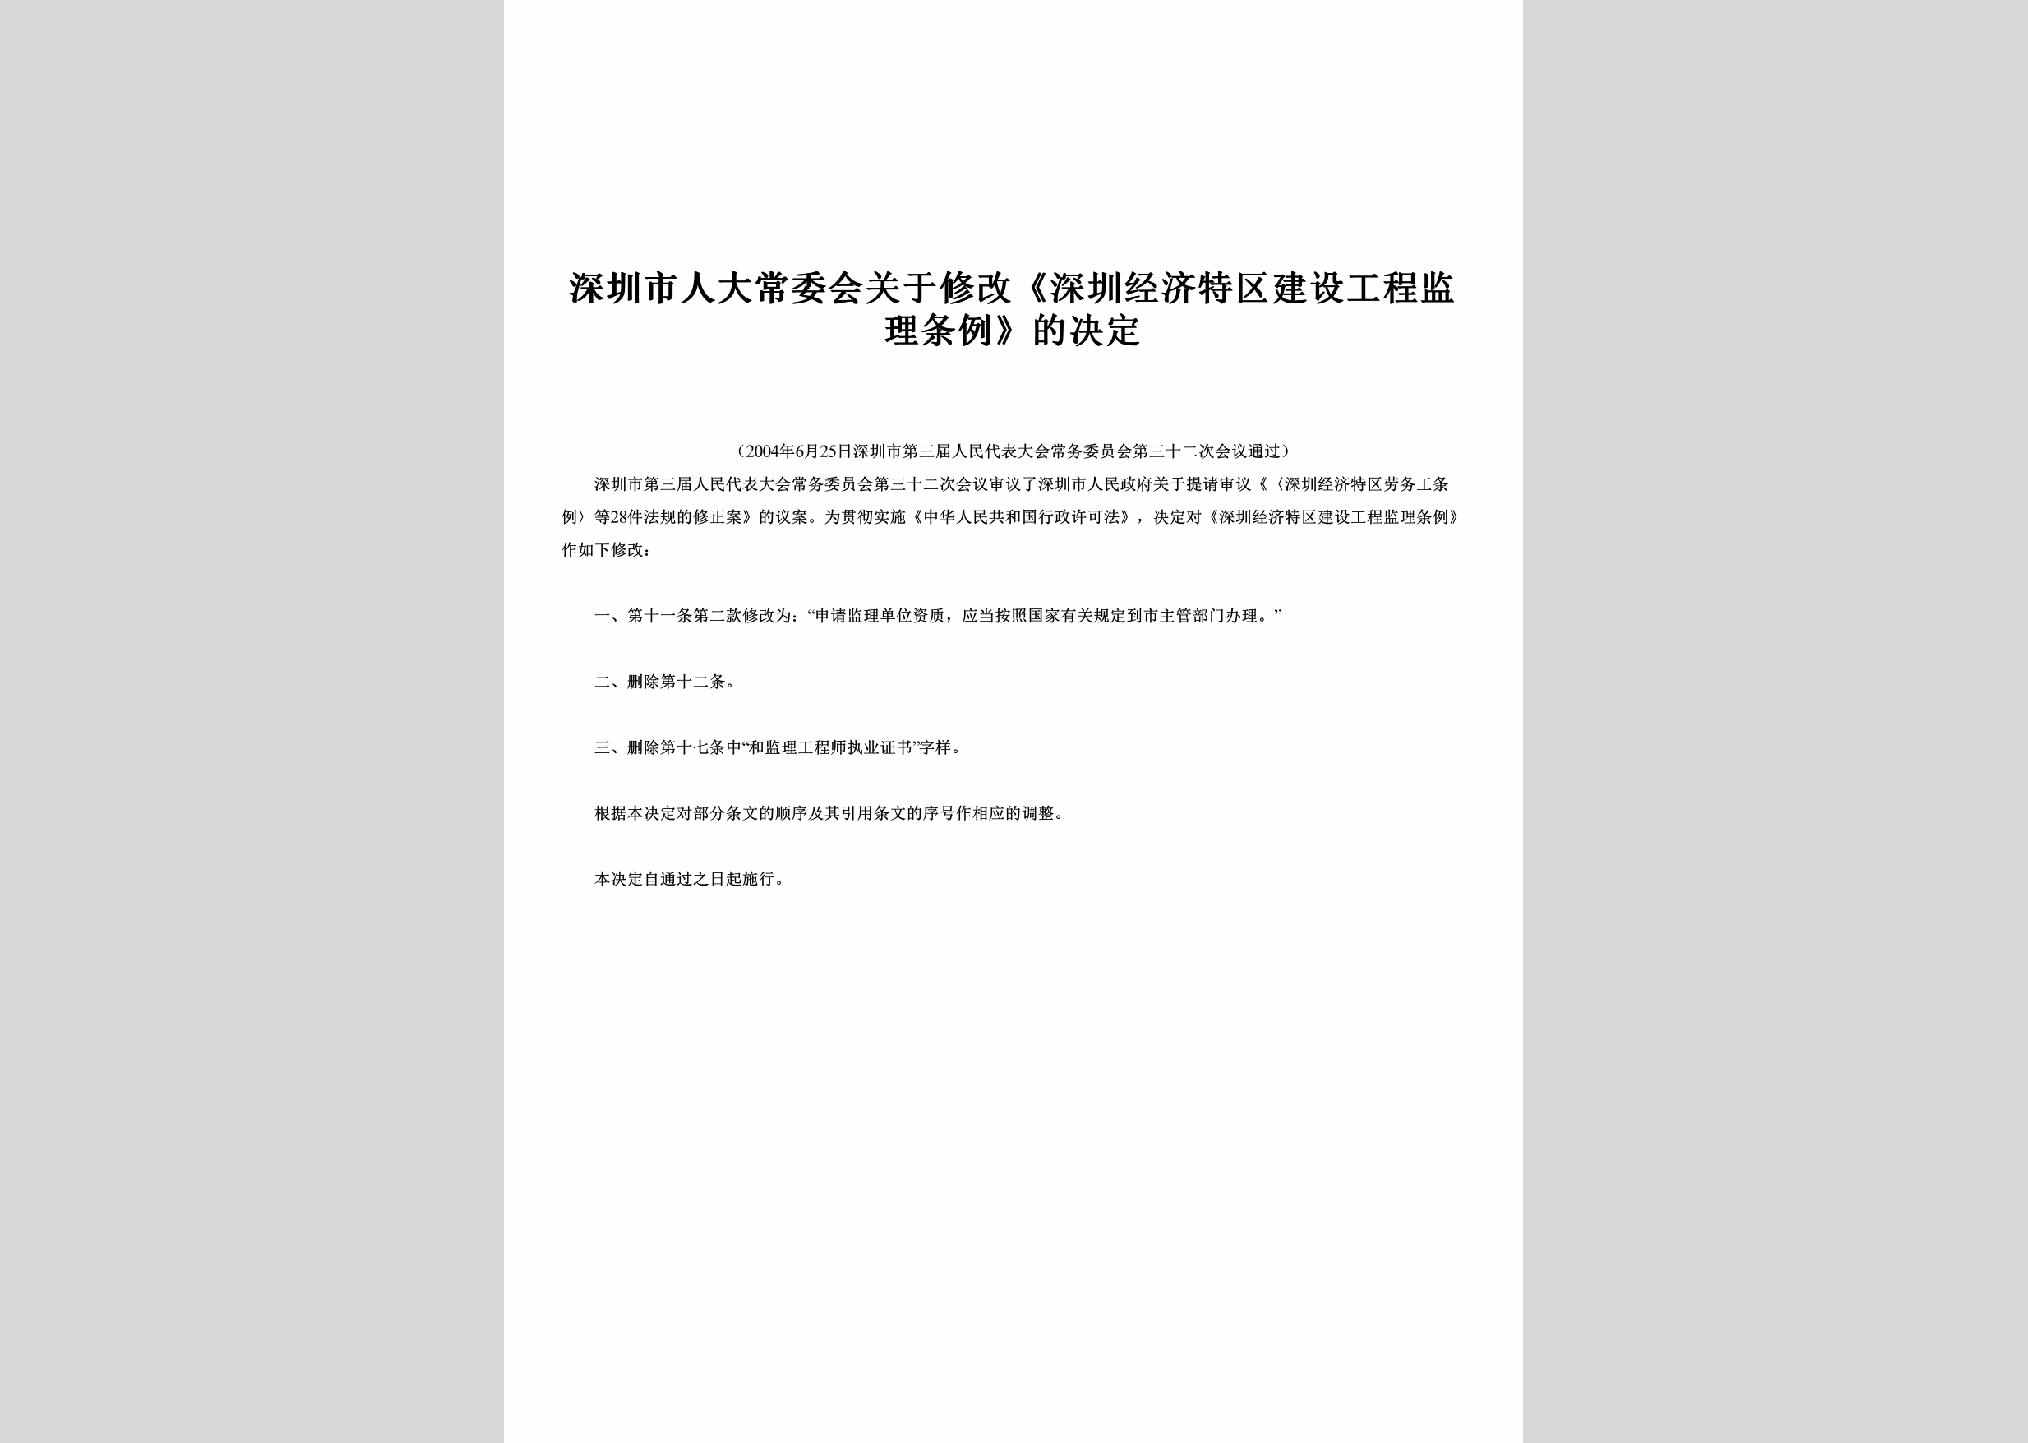 GD-JSGCJLTL-2004：关于修改《深圳经济特区建设工程监理条例》的决定